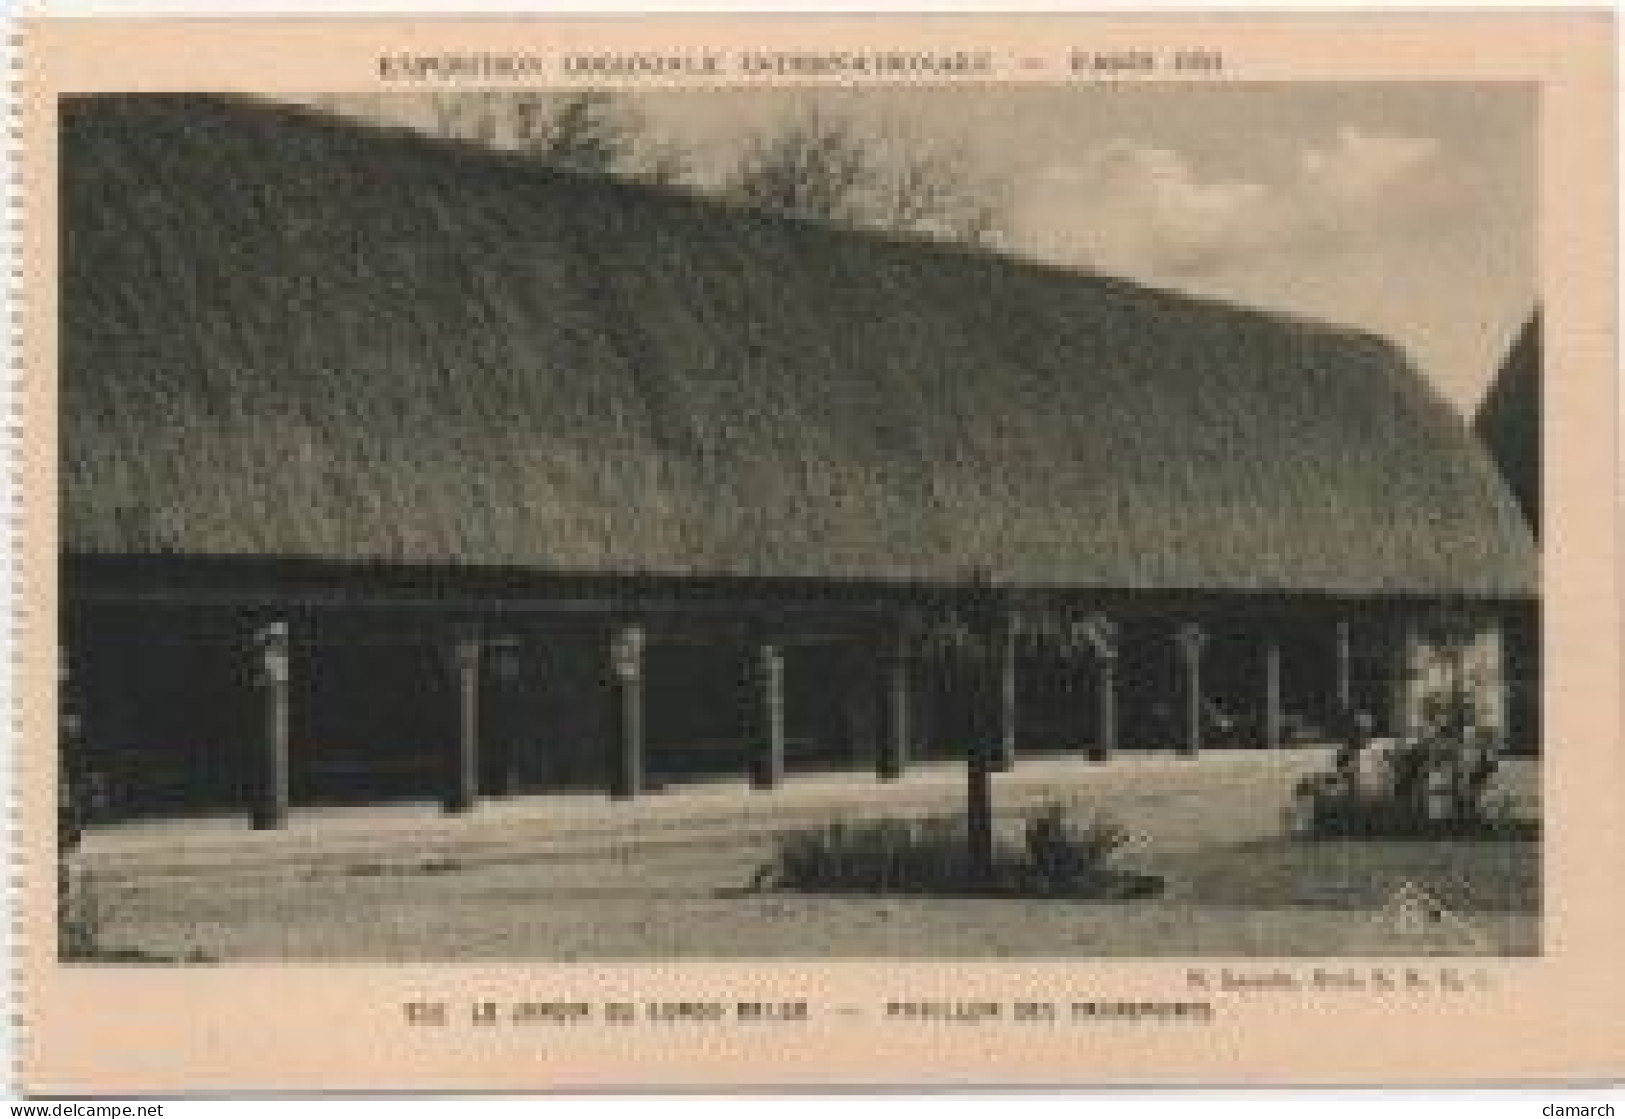 LOT de 124 CPSM de PARIS Exposition Coloniale de 1931-Toutes différentes-BE- frais d'envoi pour la F 8.25